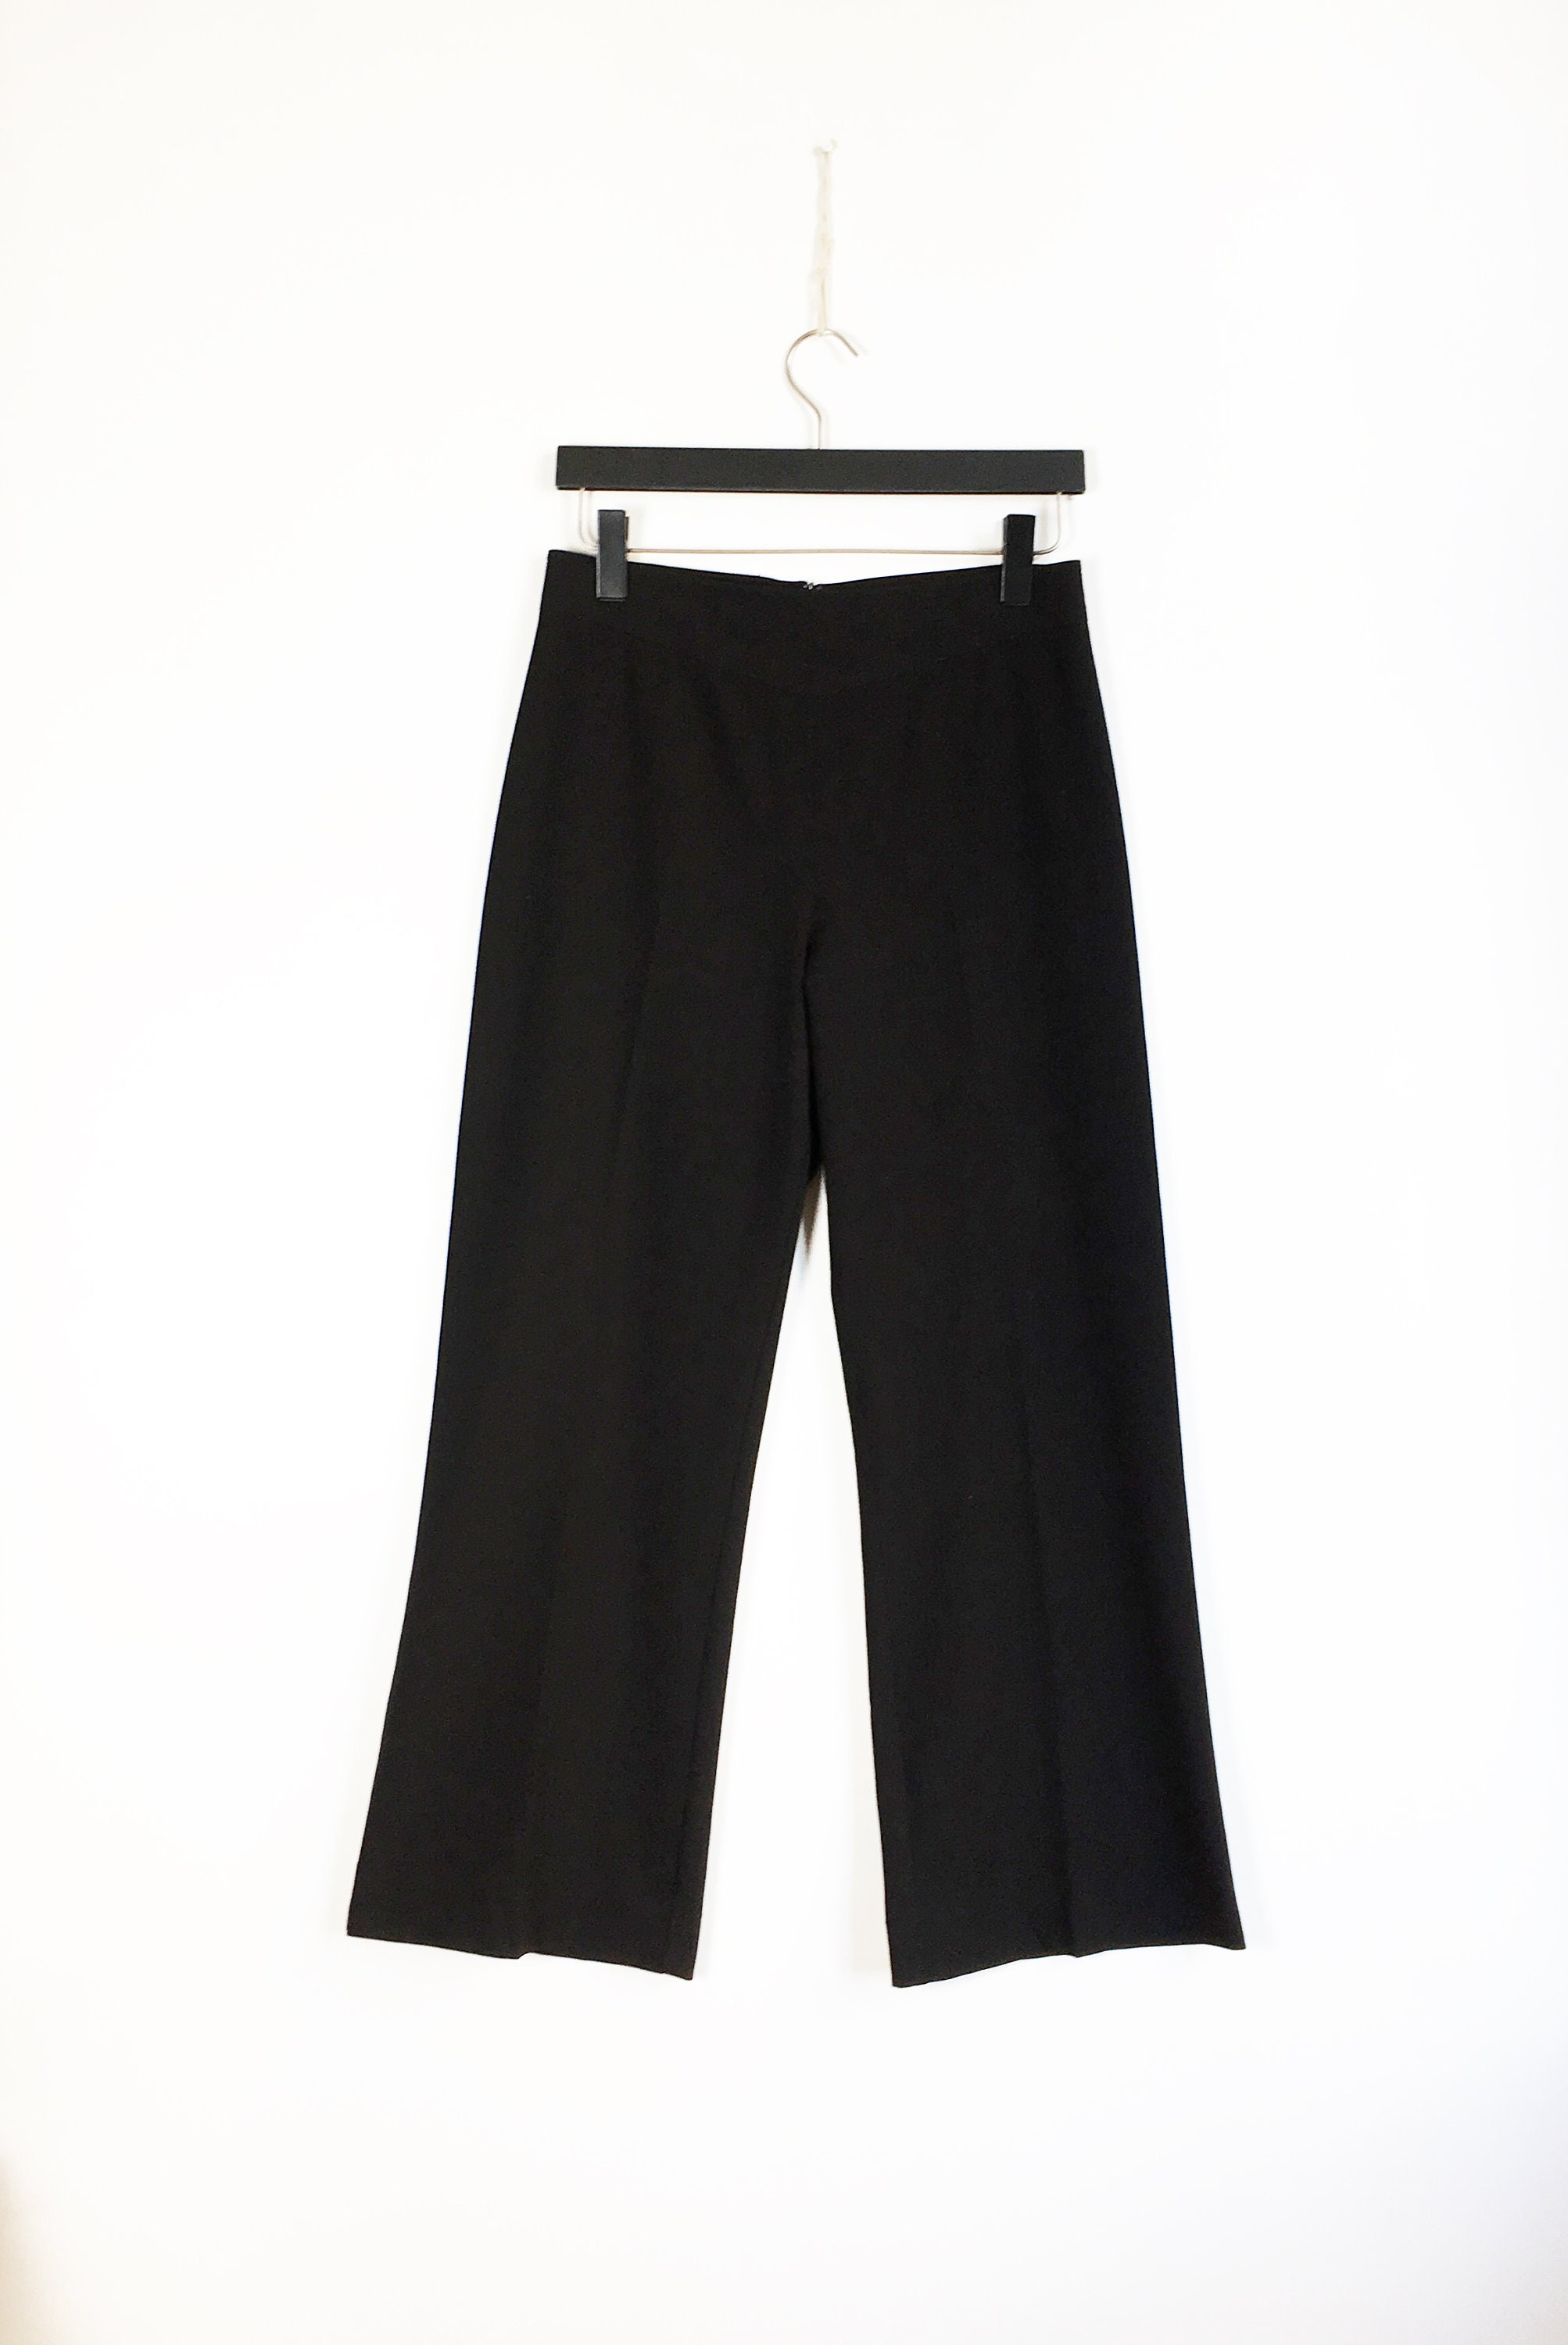 2000s Black Suit Pants 30 Women Size Medium Vintage 00s High | Etsy